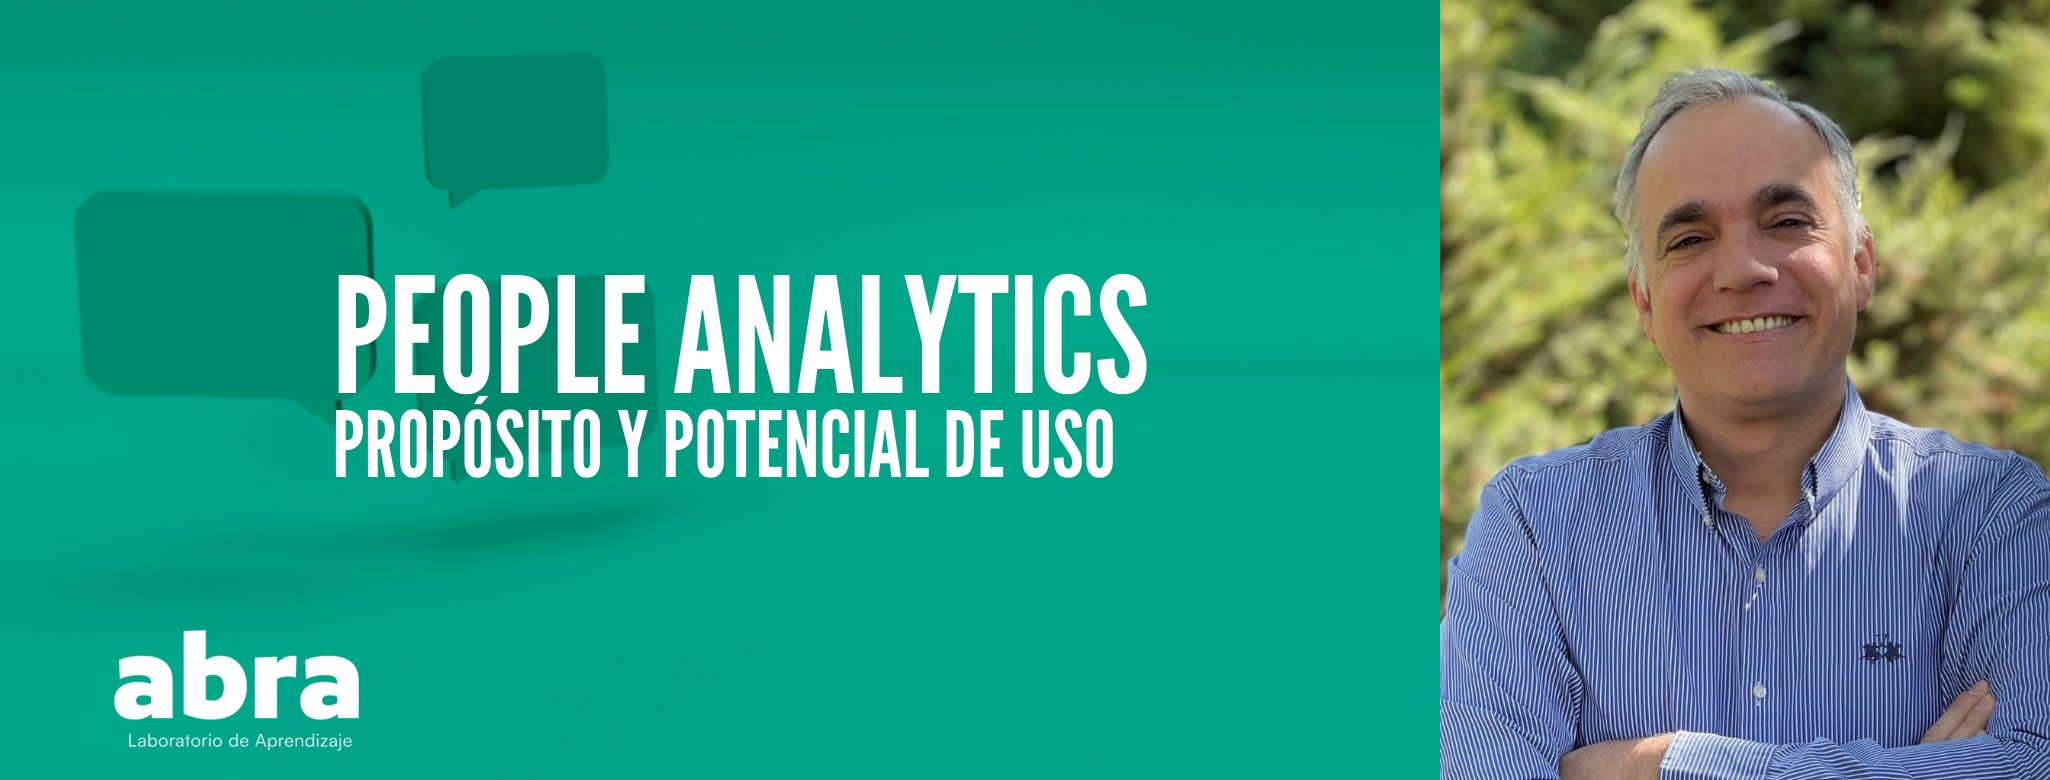  People Analytics - Propósito y Potencial de uso